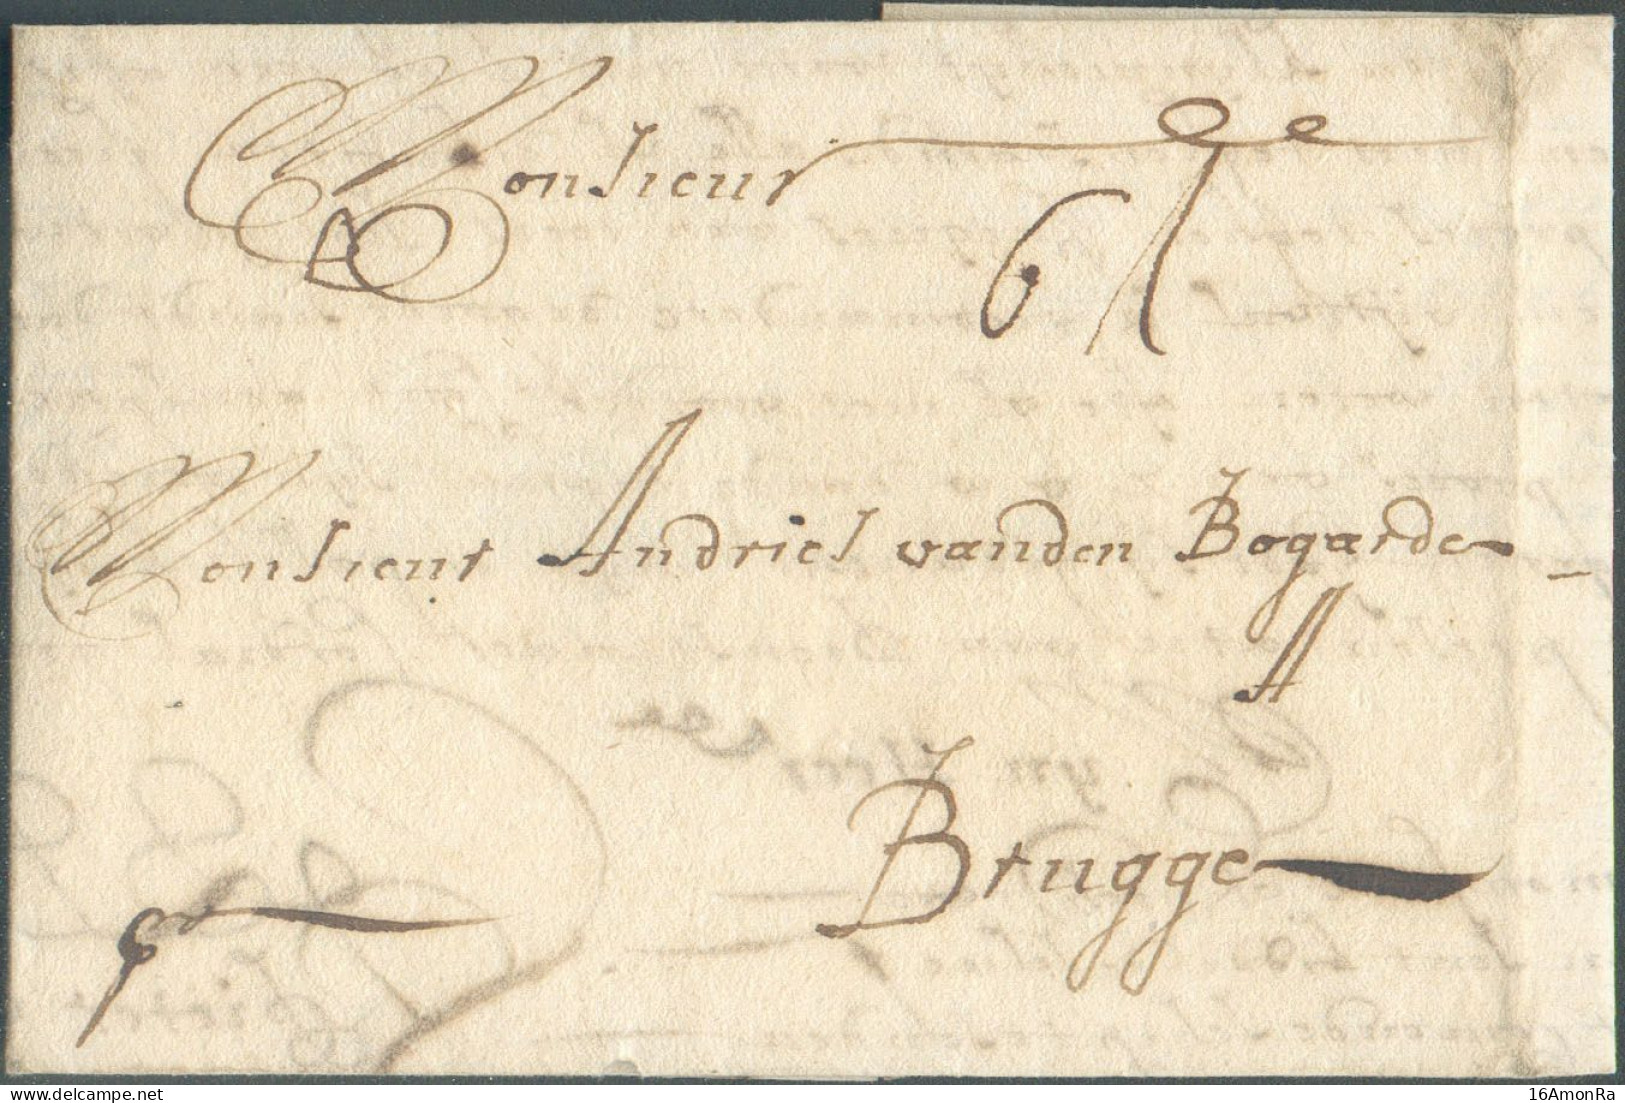 LAC De LONDON Le 23 Octobre 1699 Vers BRUGGE; Port '6' Shillings.  Superbe - 21367 - 1621-1713 (Pays-Bas Espagnols)